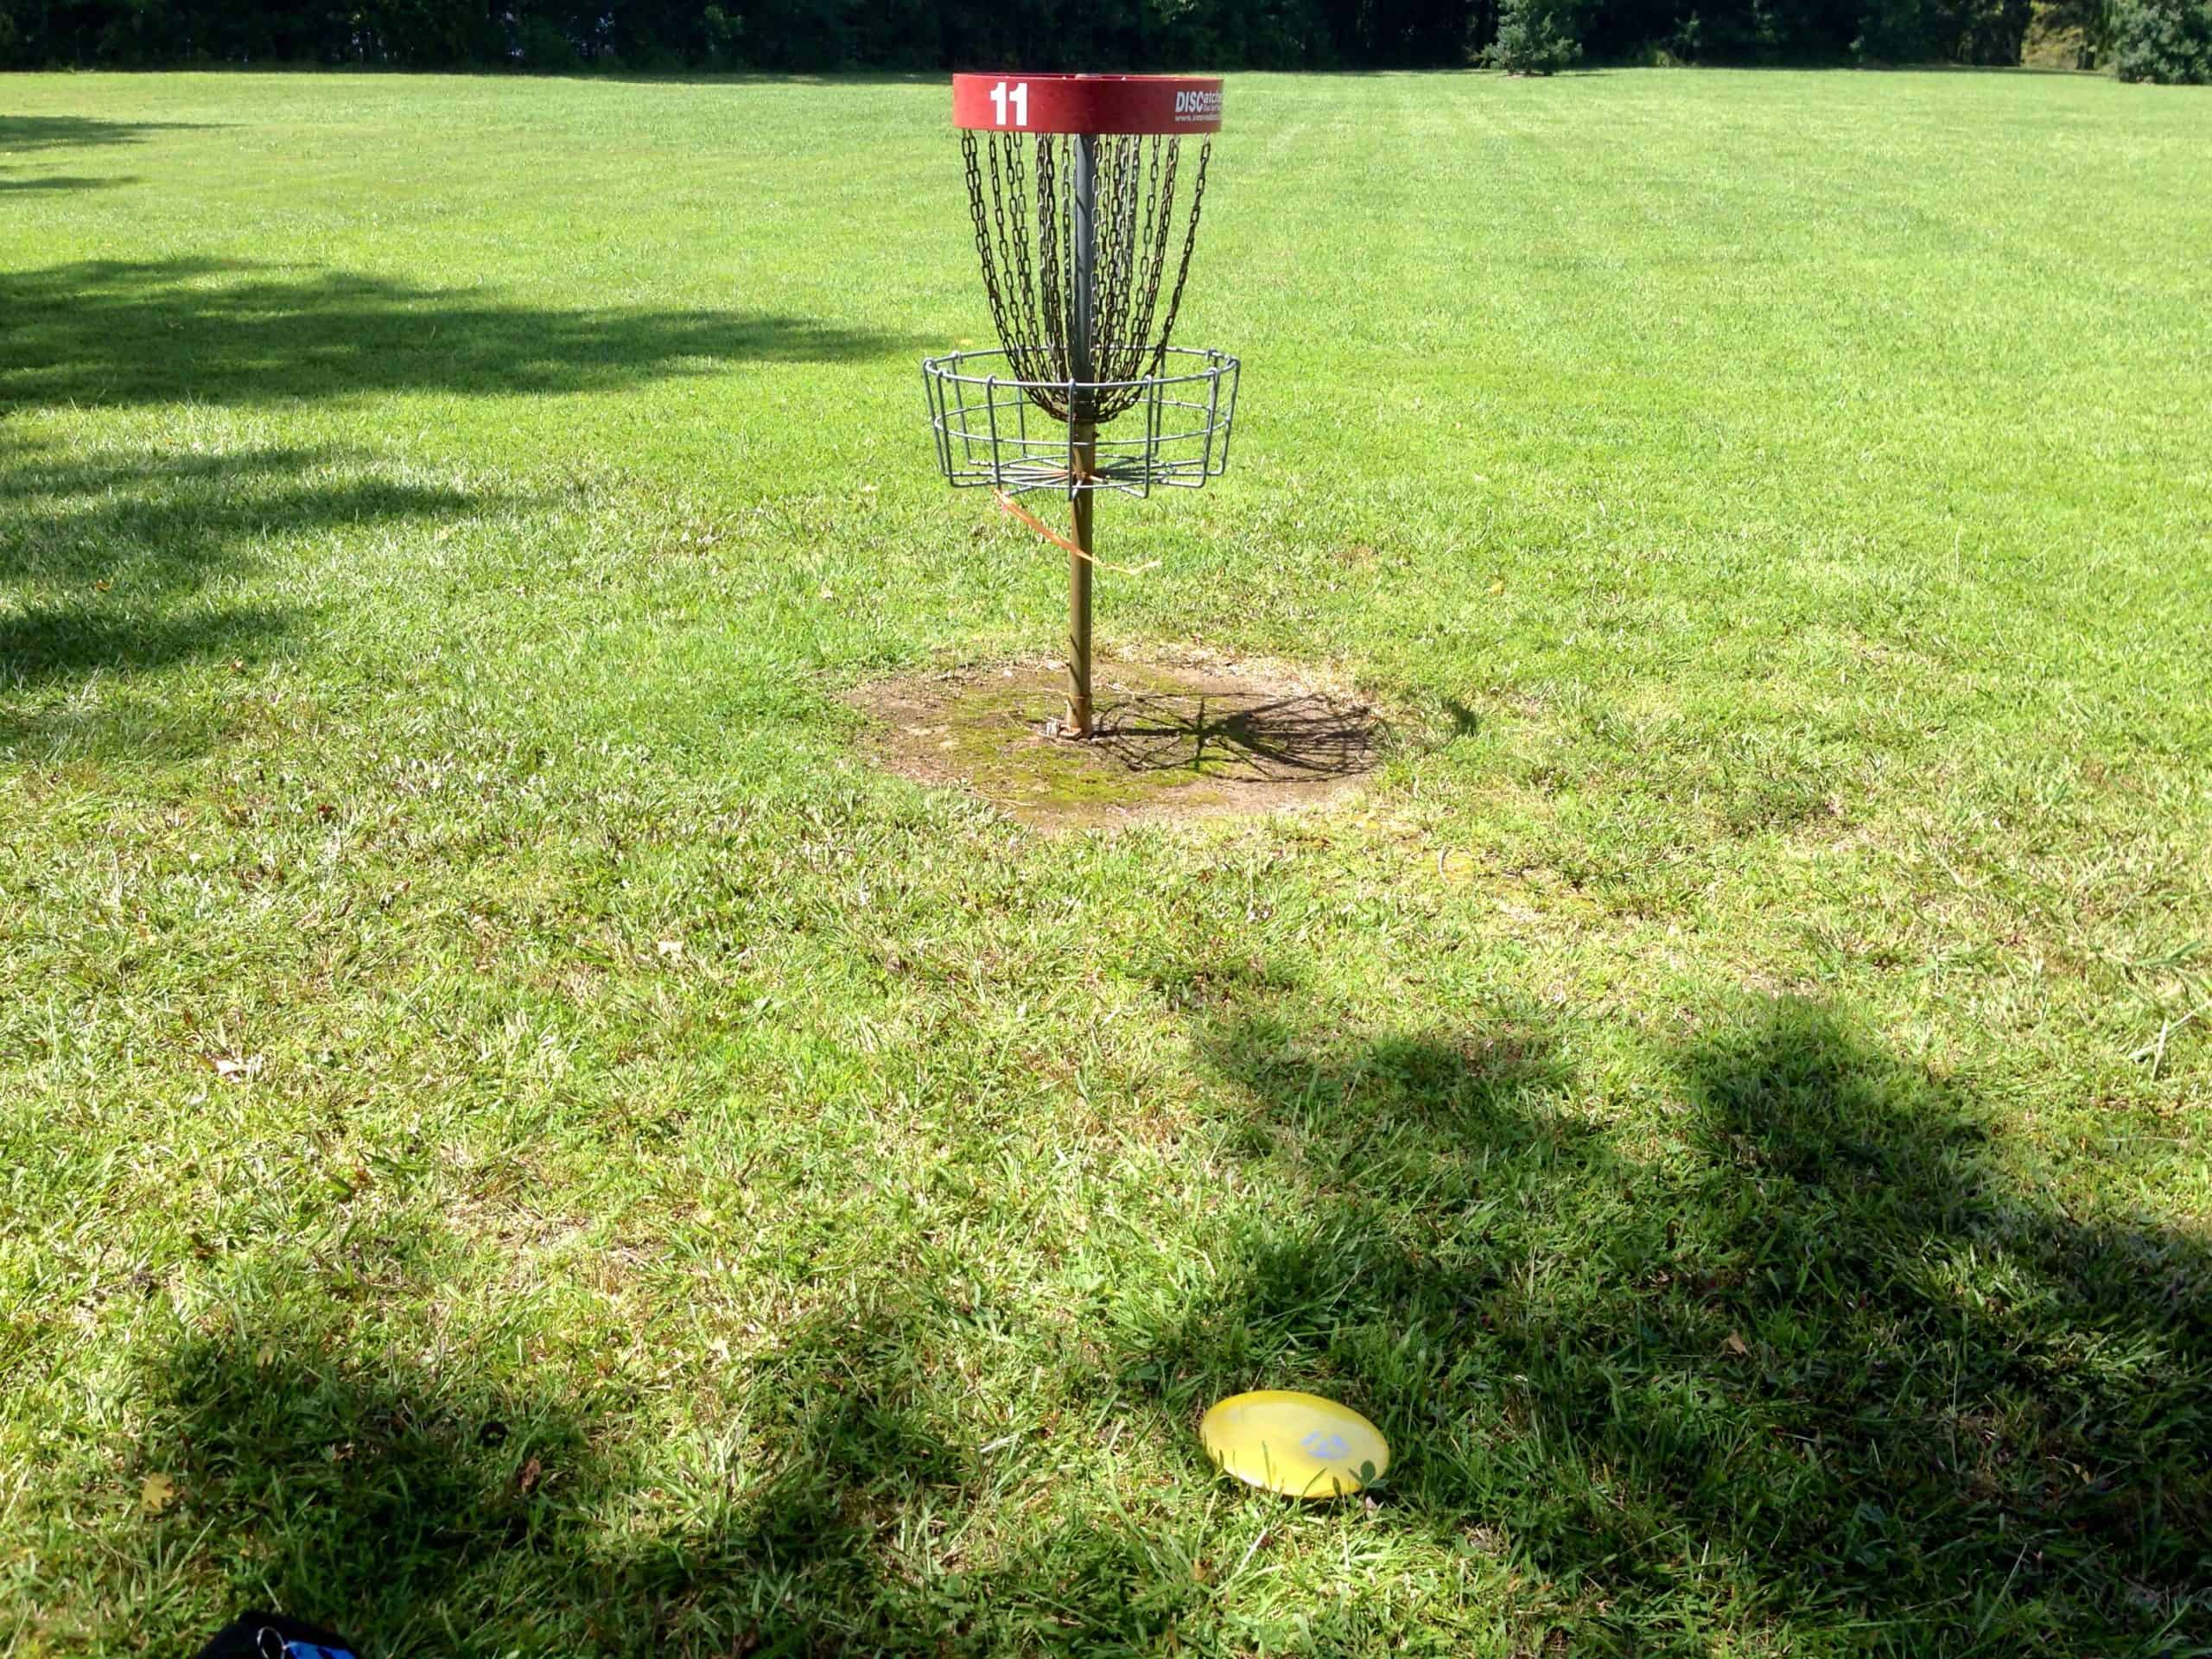 parcours-de-disc-golf-tentative-de-birdie-panier-de-disc-golf-et-frisbee-a-terre-frisbee-ultimate